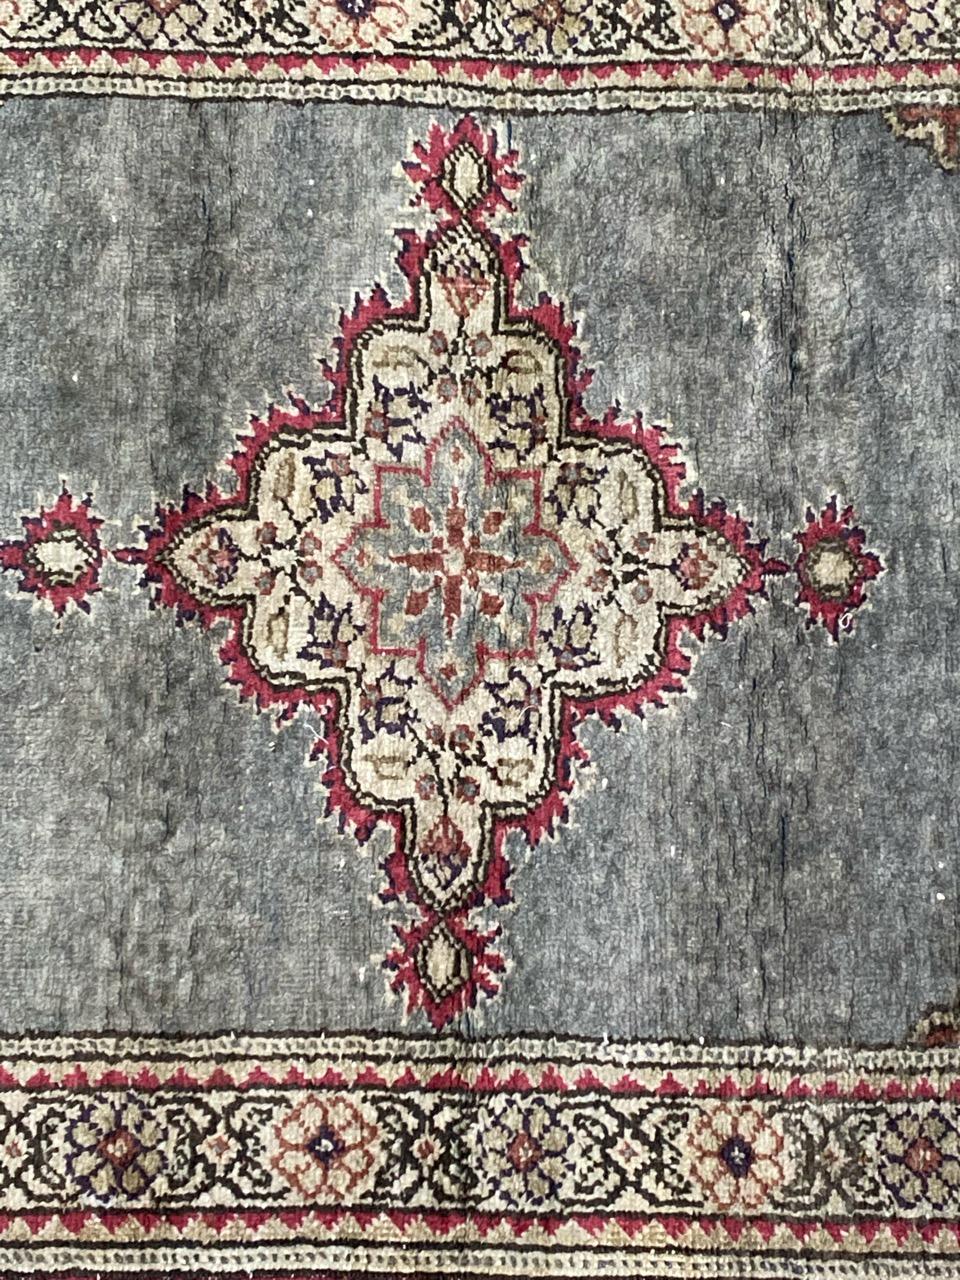 Hübscher kleiner türkischer Teppich aus der Mitte des Jahrhunderts mit schönem persischen Design und schönen hellen Farben, komplett handgeknüpft mit Seide und Baumwollsamt auf Baumwollunterlage.

✨✨✨
